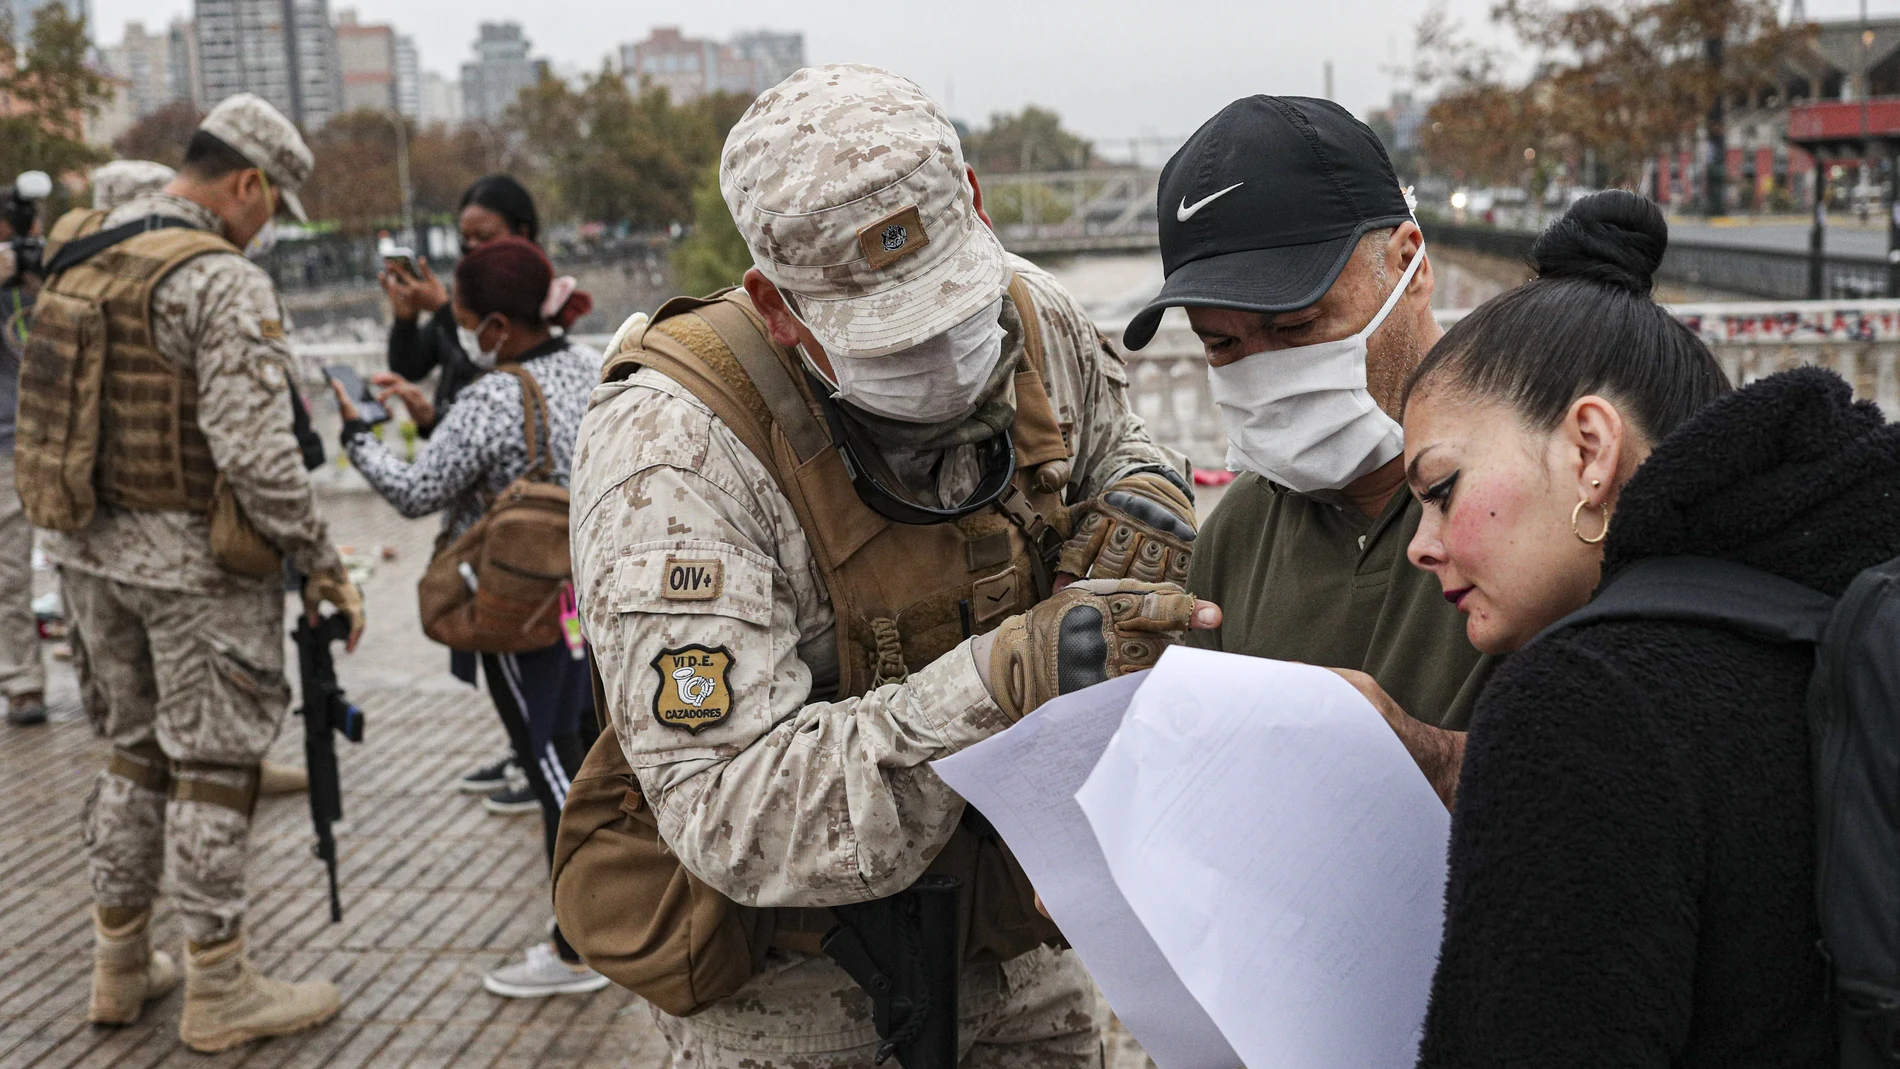 Un soldado revisa el salvoconducto de una mujer para acceder a una zona sometida a curantena en Santiago de Chile/AP